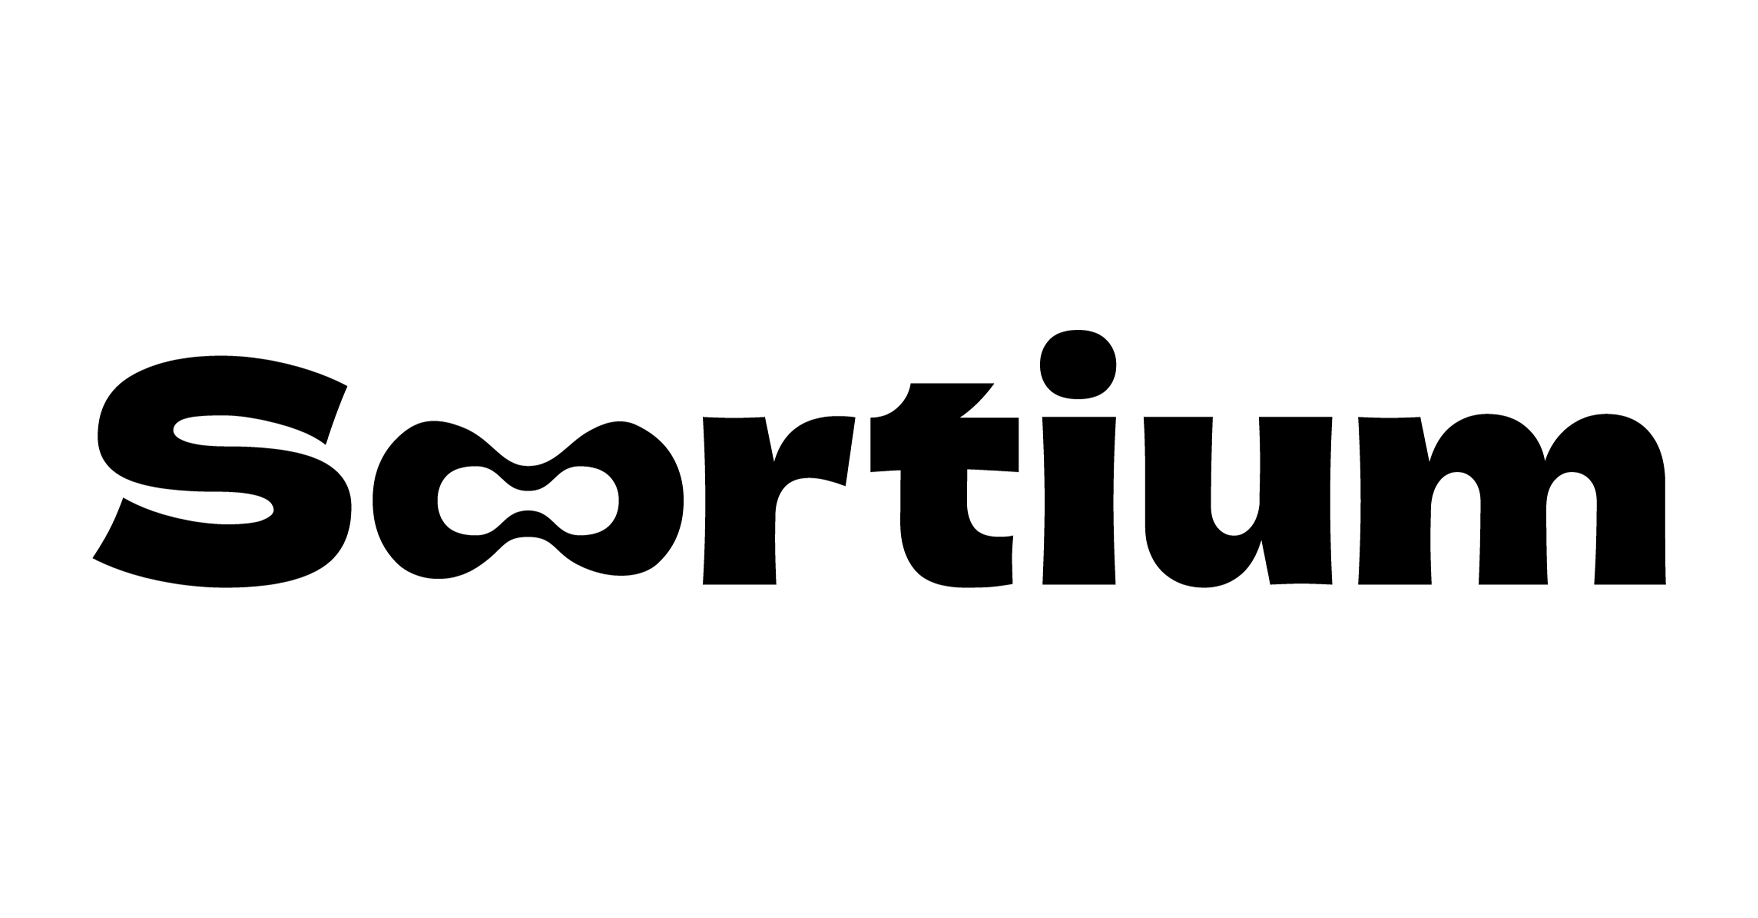 Sortium-Logo